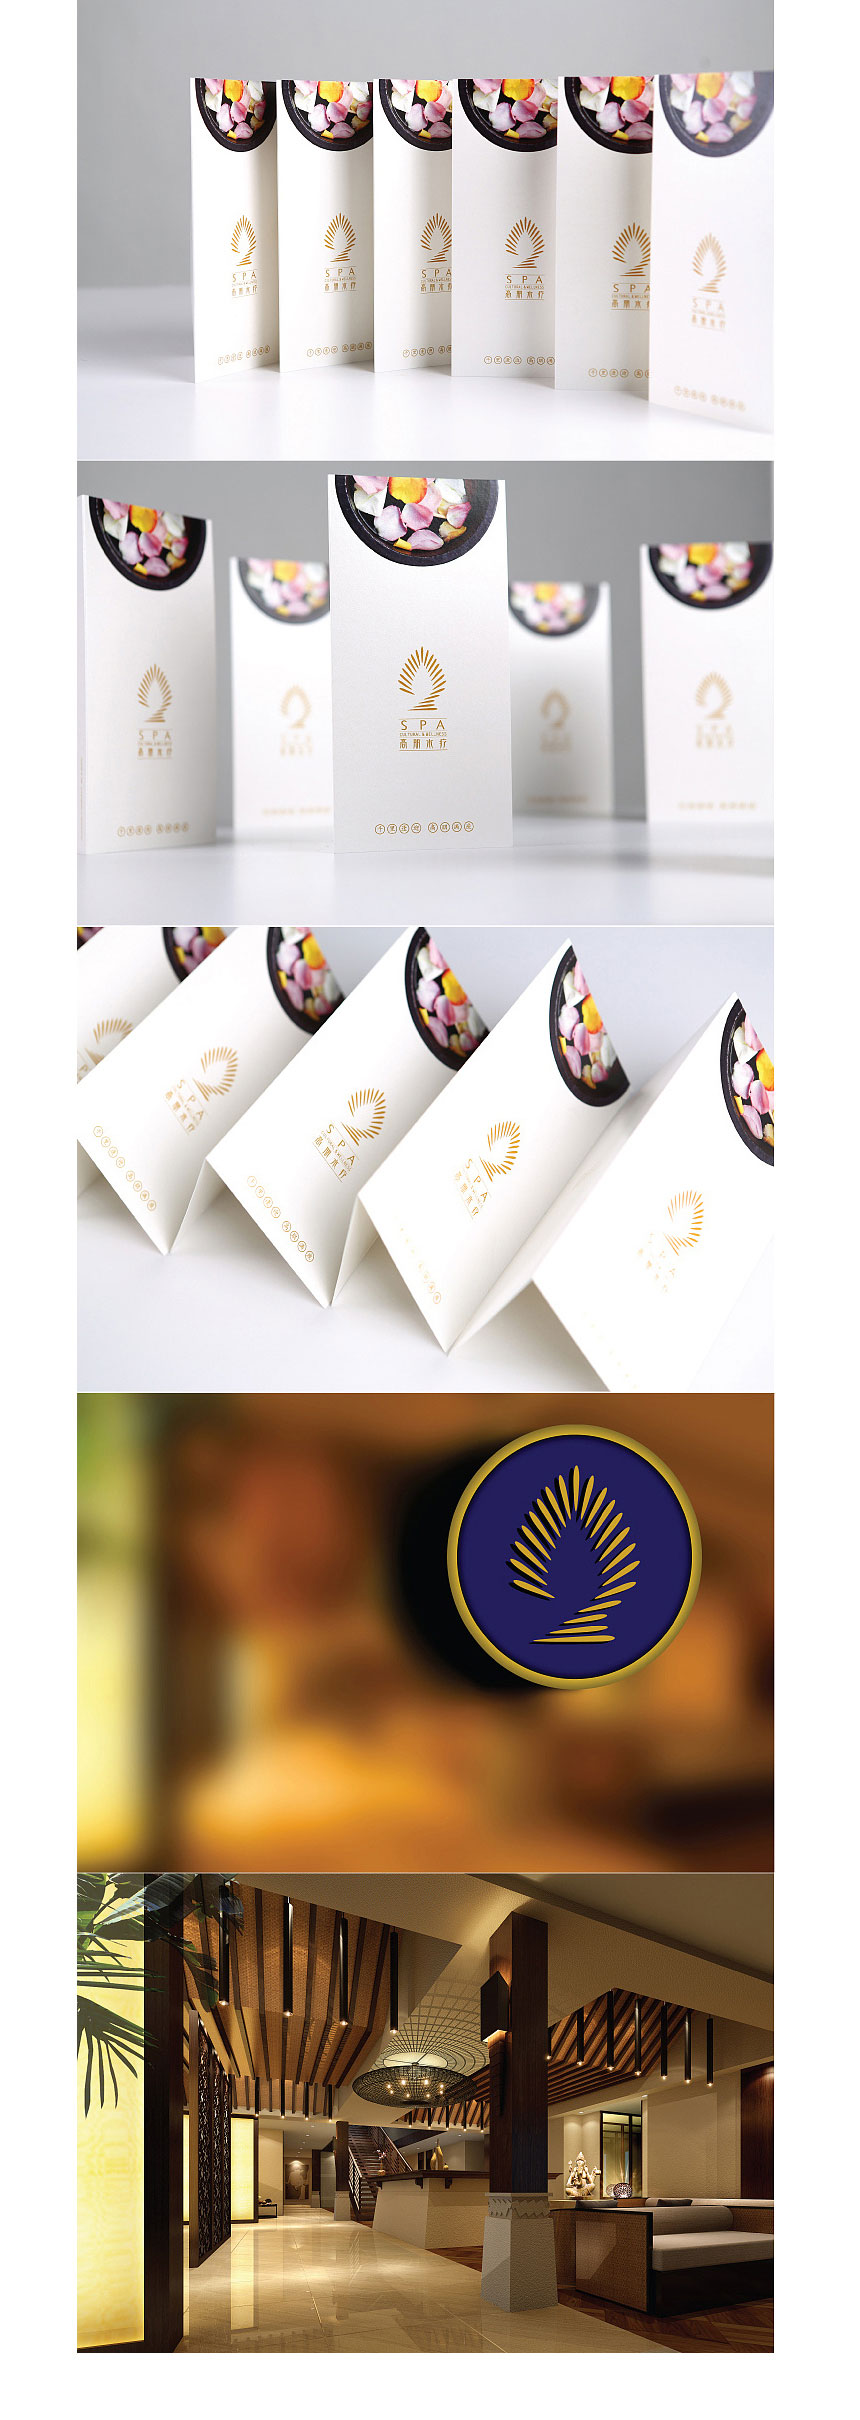 高朋水疗商标设计欣赏_东莞服务行业商标设计公司专业品牌